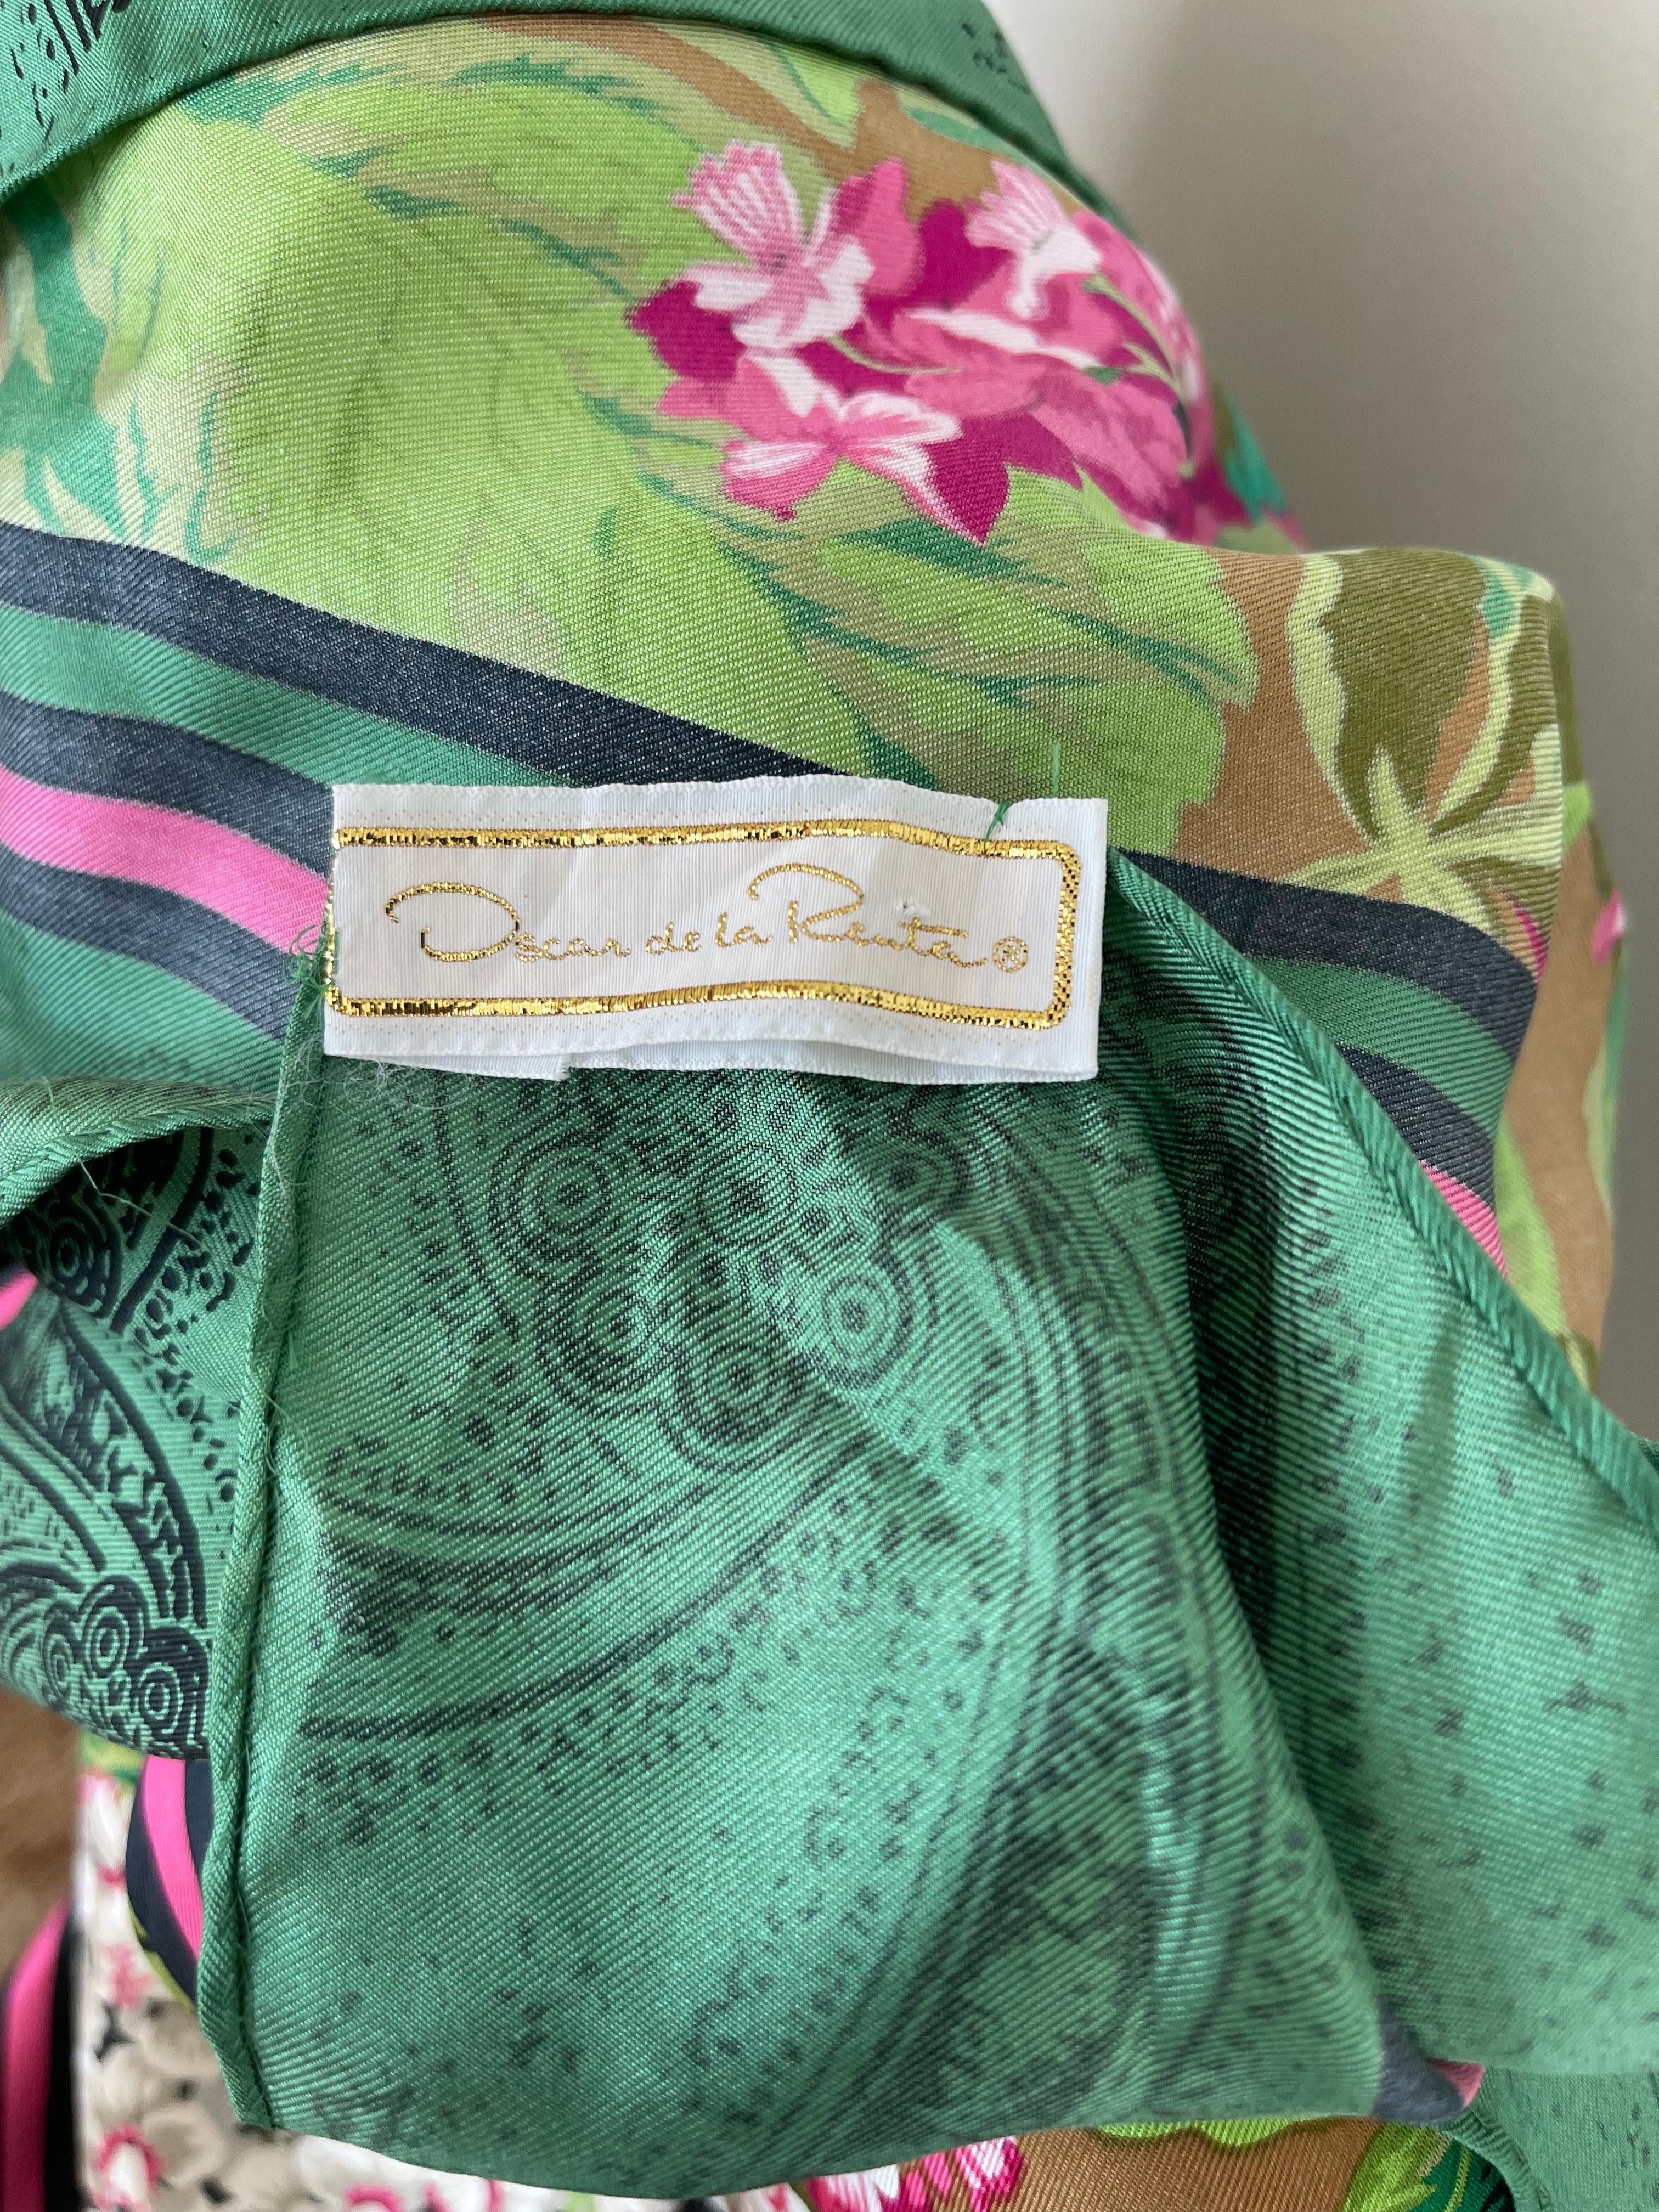 1990 OSCAR DE LA RENTA collection or foulard en soie ! Des couleurs vibrantes de verts, de roses et de noirs. Bord et centre en marguerite avec des fleurs d'hortensia entre les deux. Bords roulés à la main. Peut être porté de différentes manières.